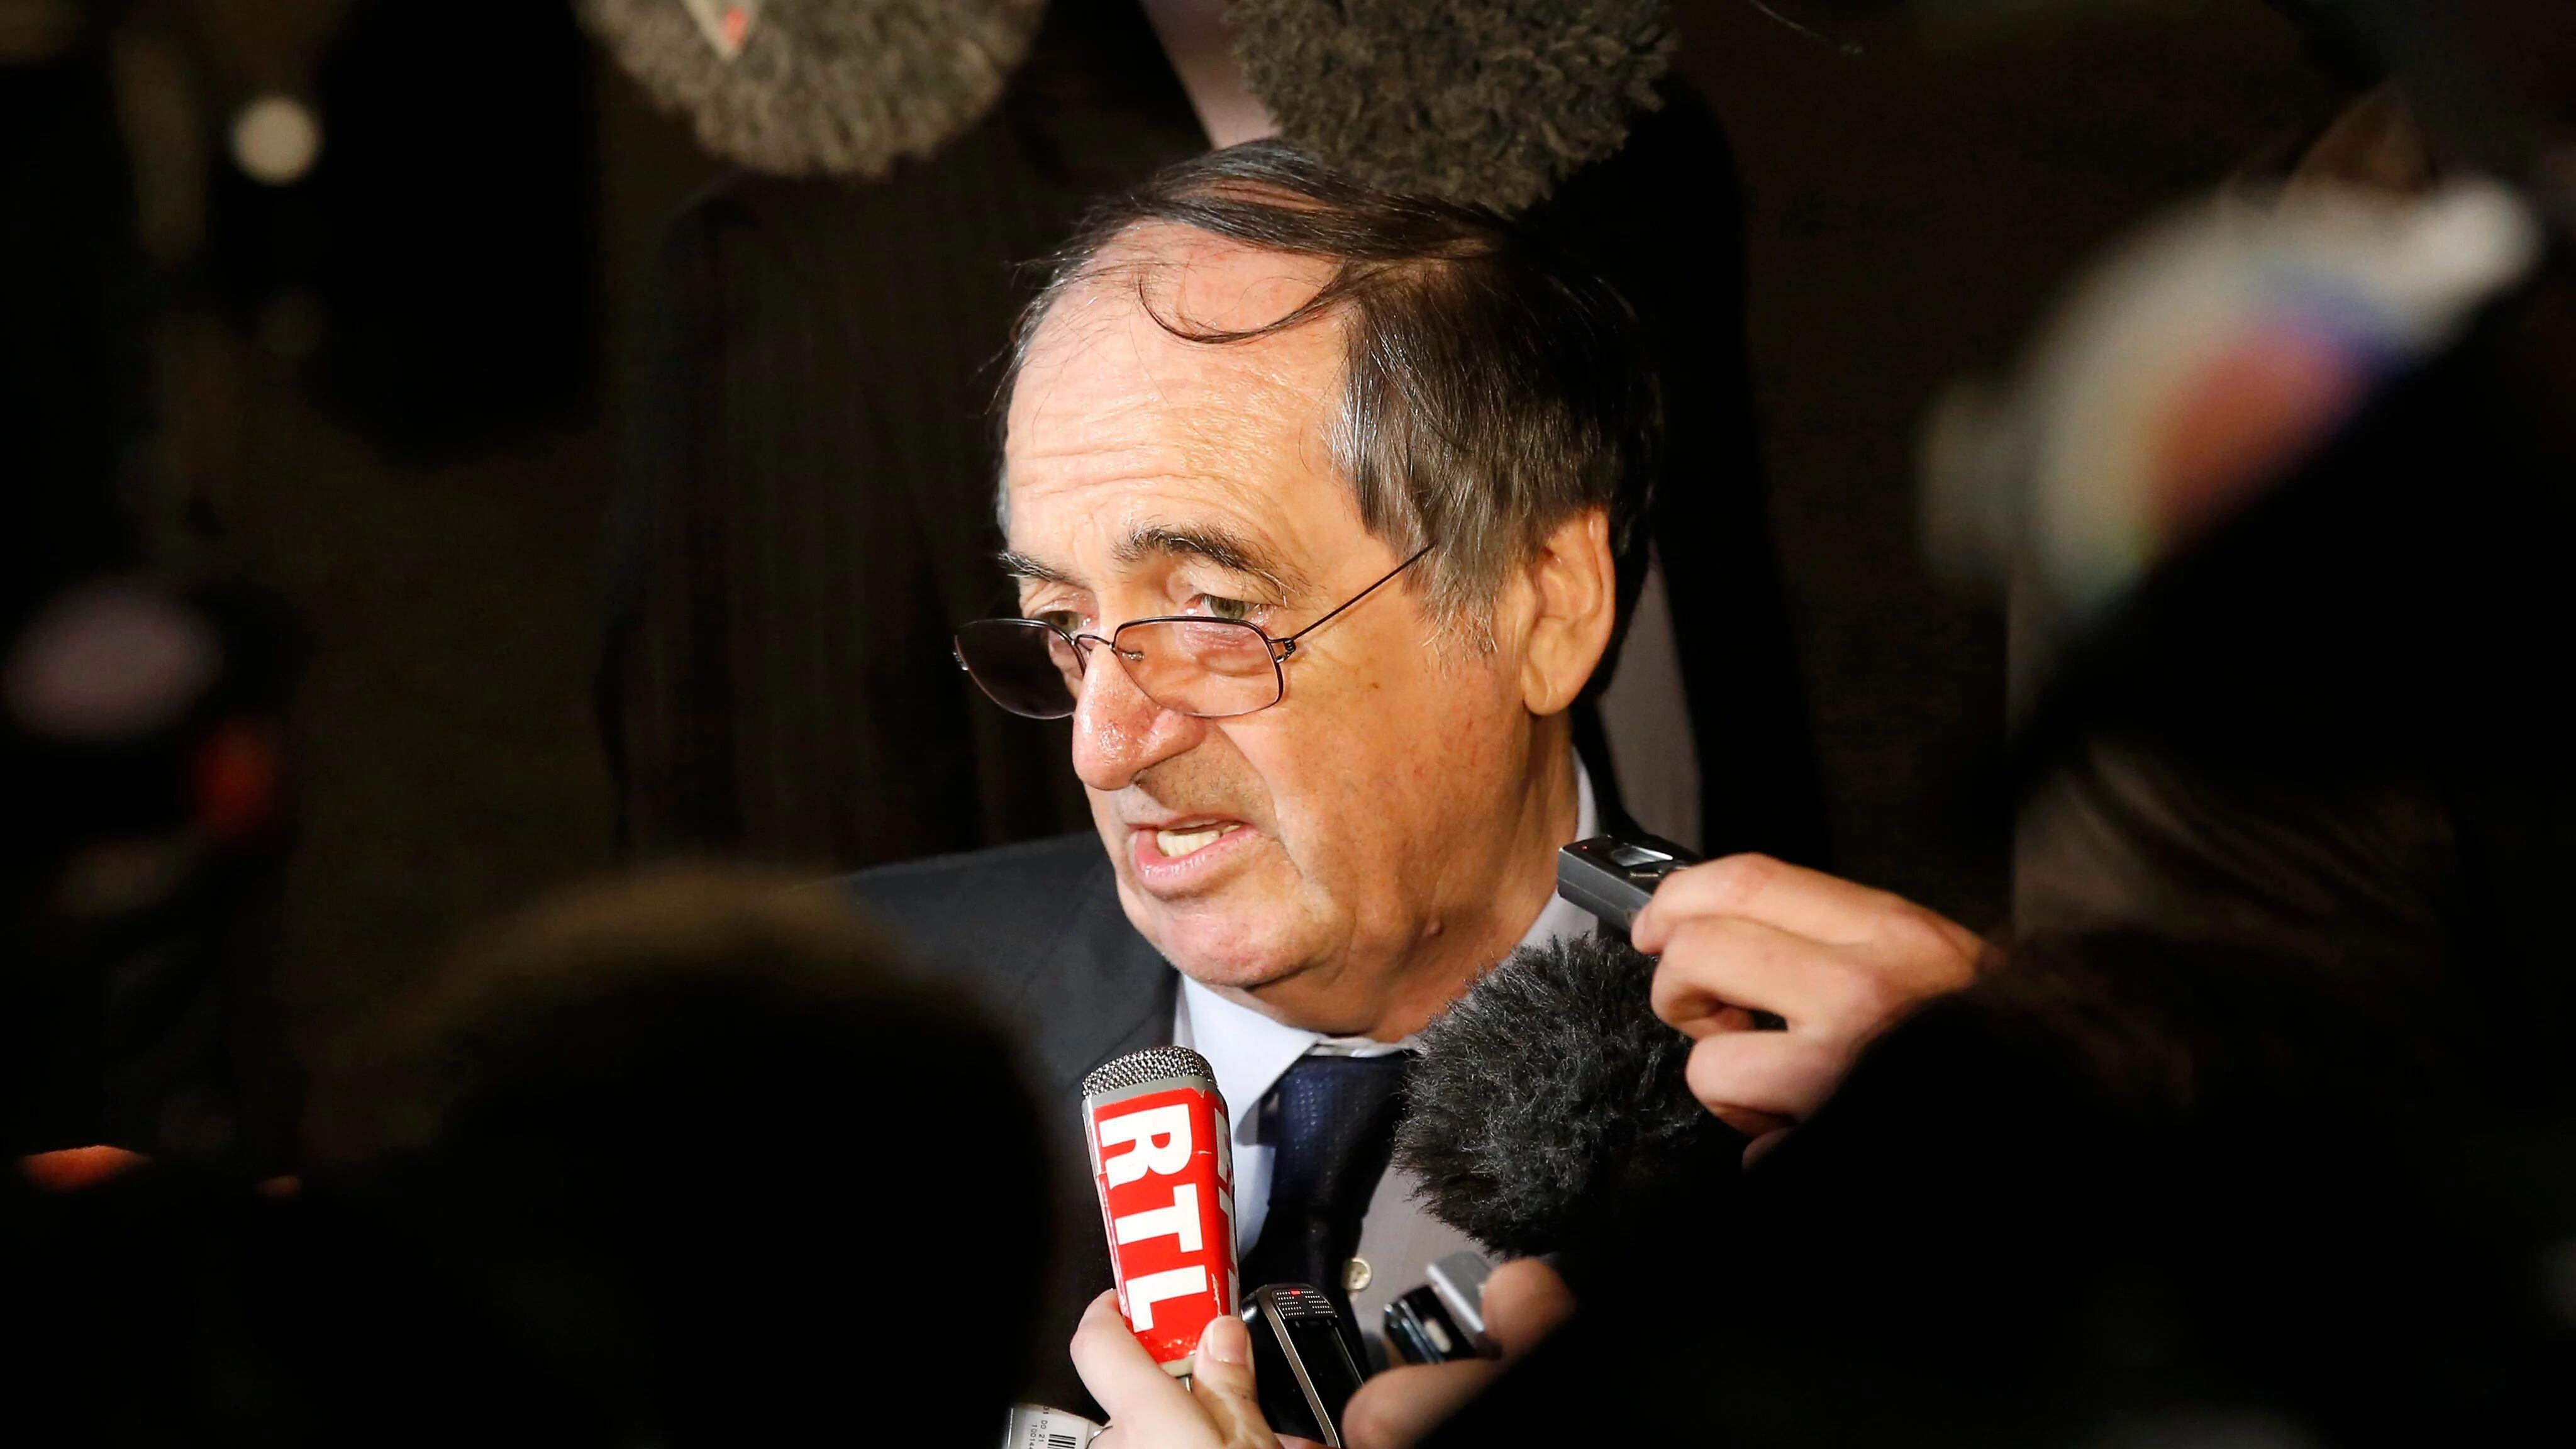 Comentarios sexuales, exceso de alcohol y poder centralizado: las graves acusaciones contra el presidente del fútbol francés